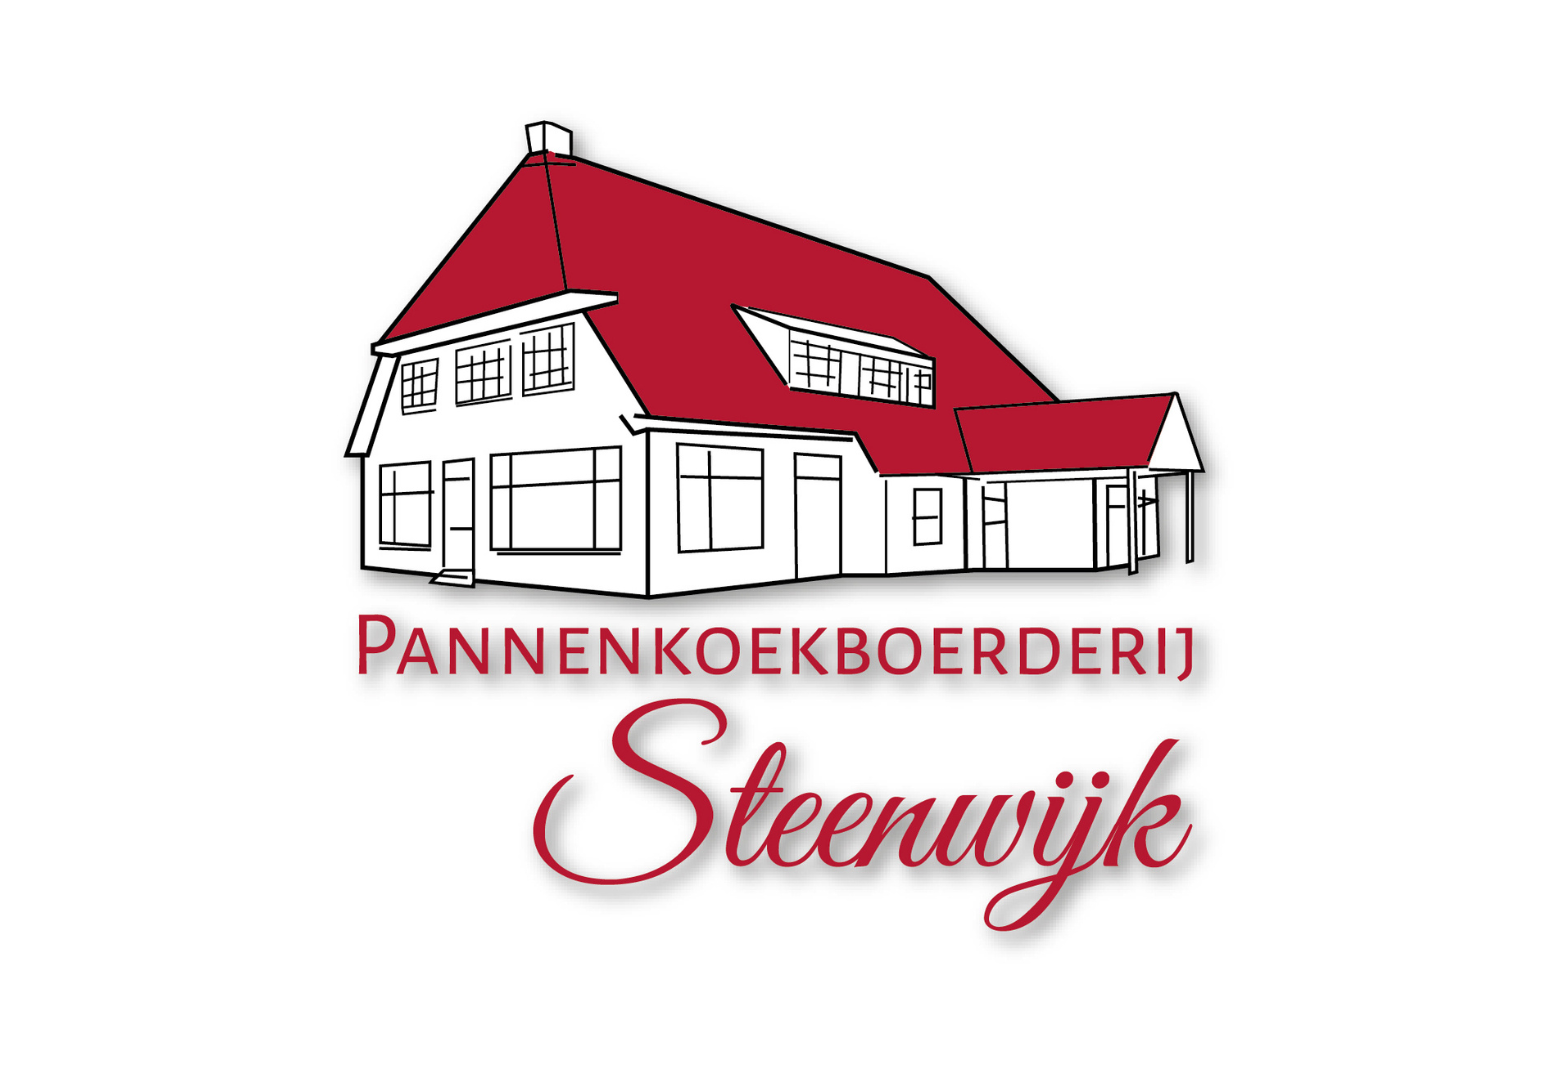 Pannenkoekboerderij Steenwijk logo